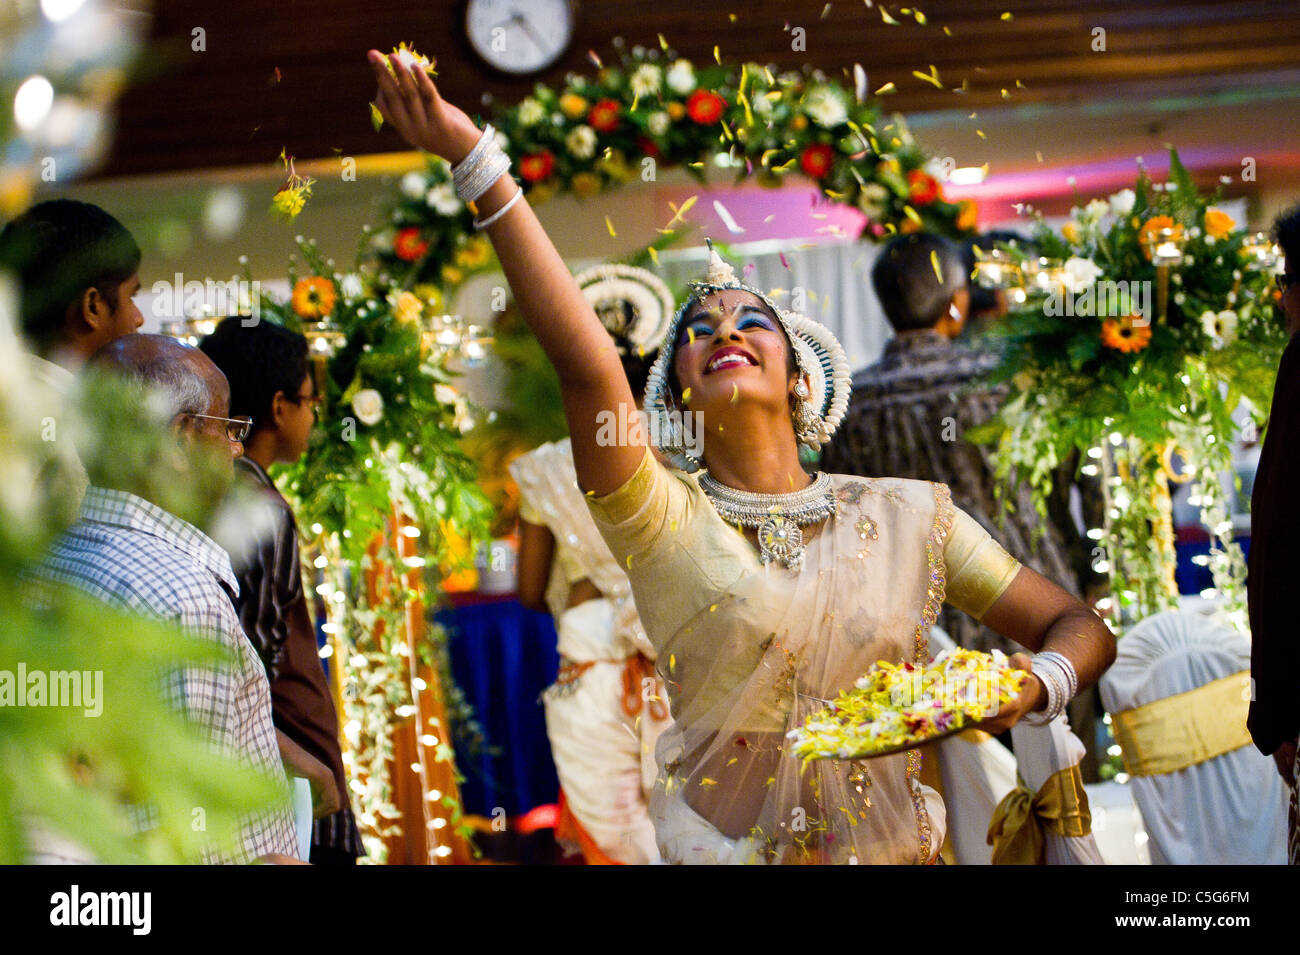 Danseurs lors d'une réception de mariage indien Banque D'Images